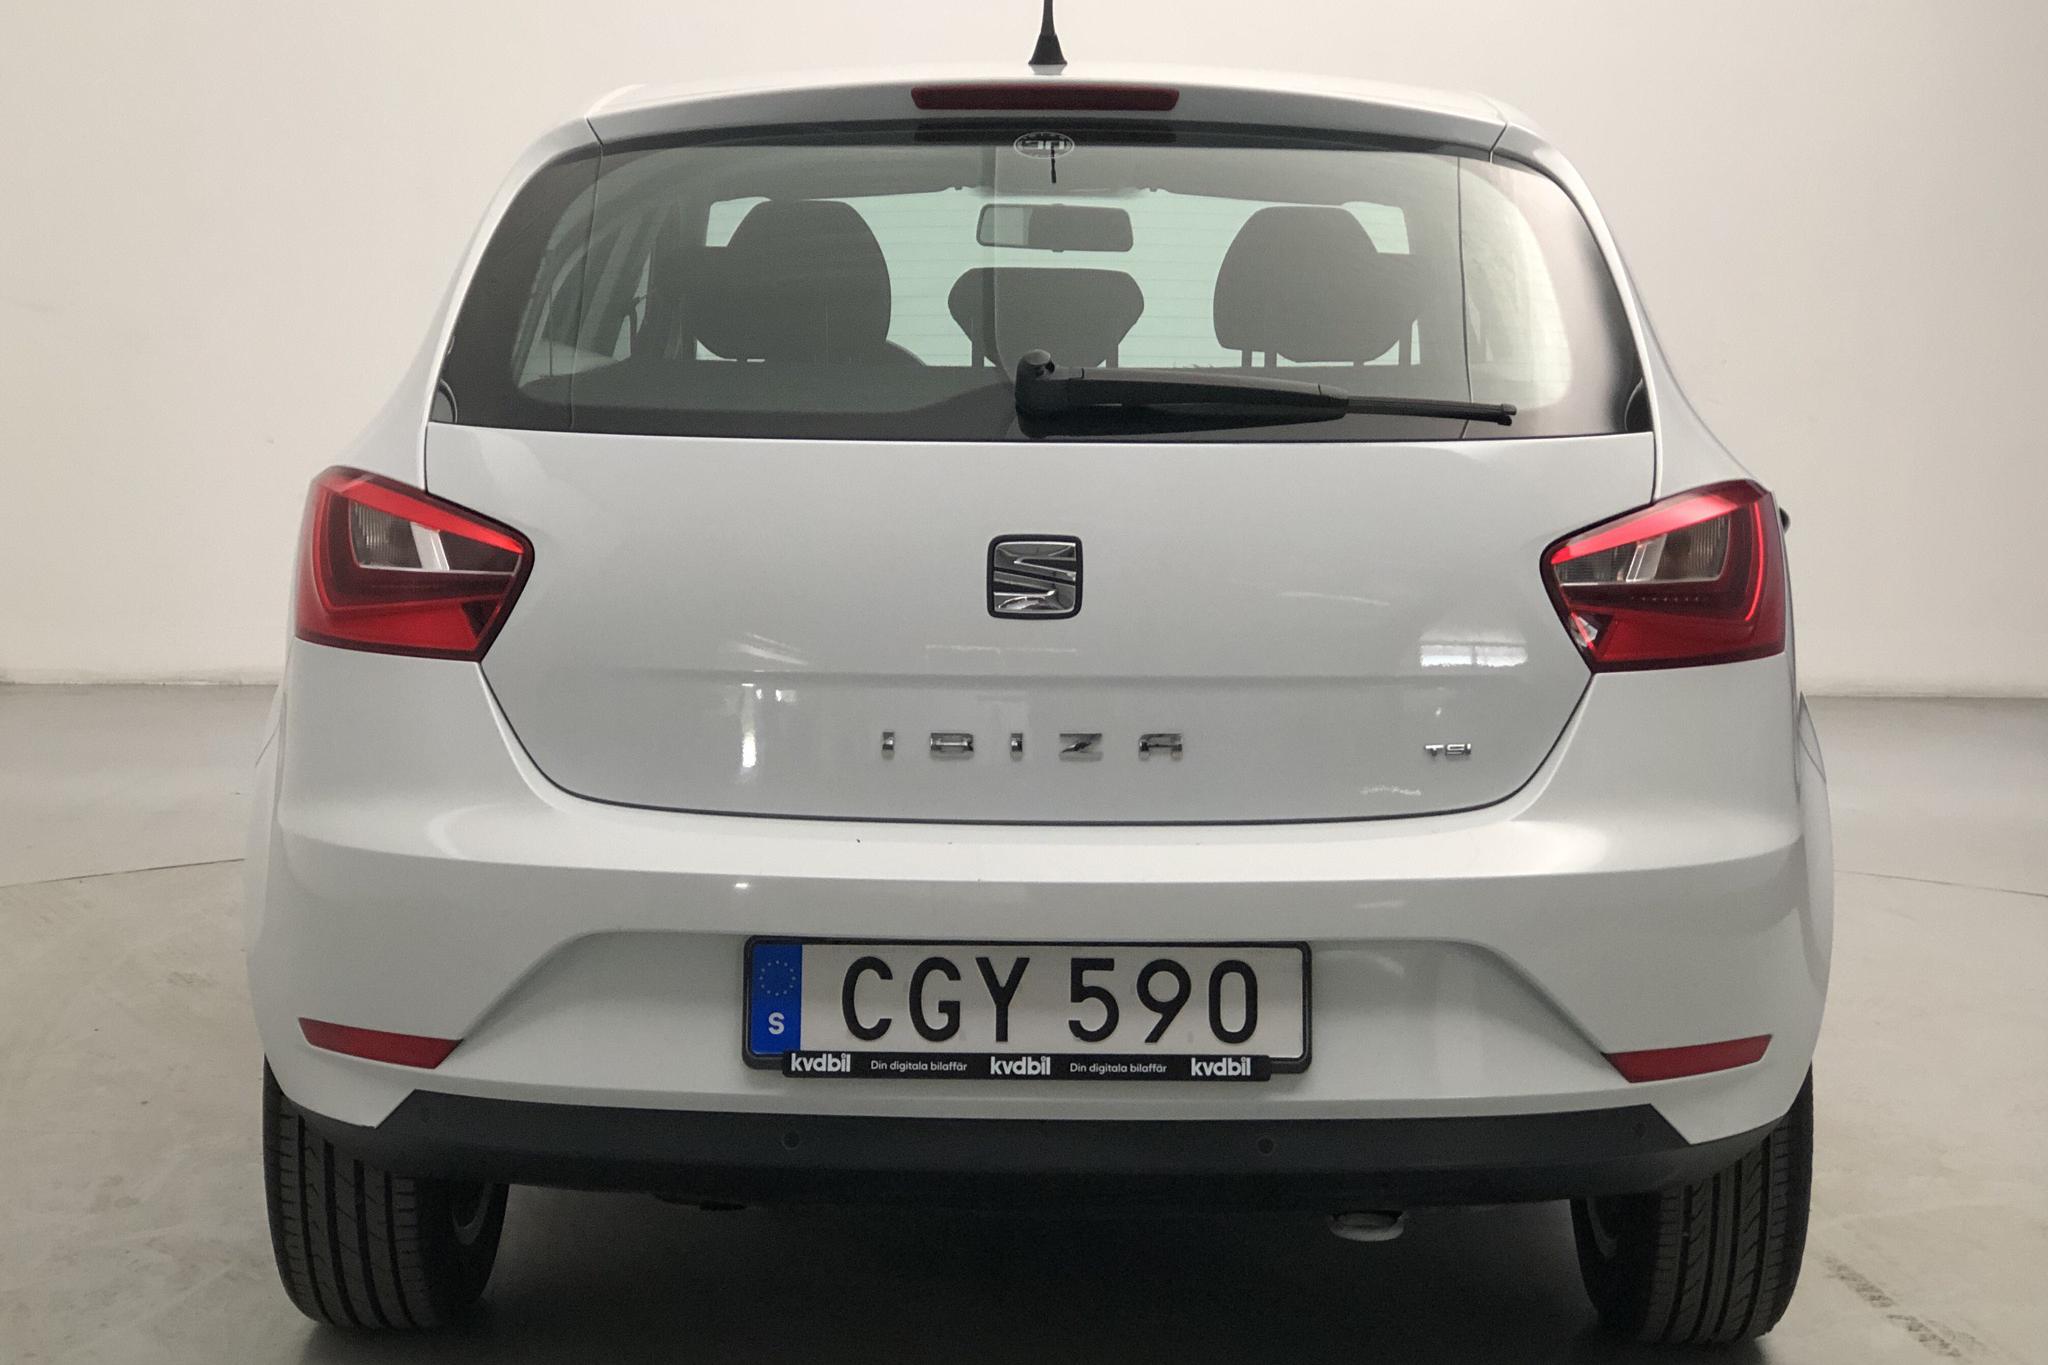 Seat Ibiza 1.2 TSI 5dr (85hk) - 81 260 km - Manual - white - 2014